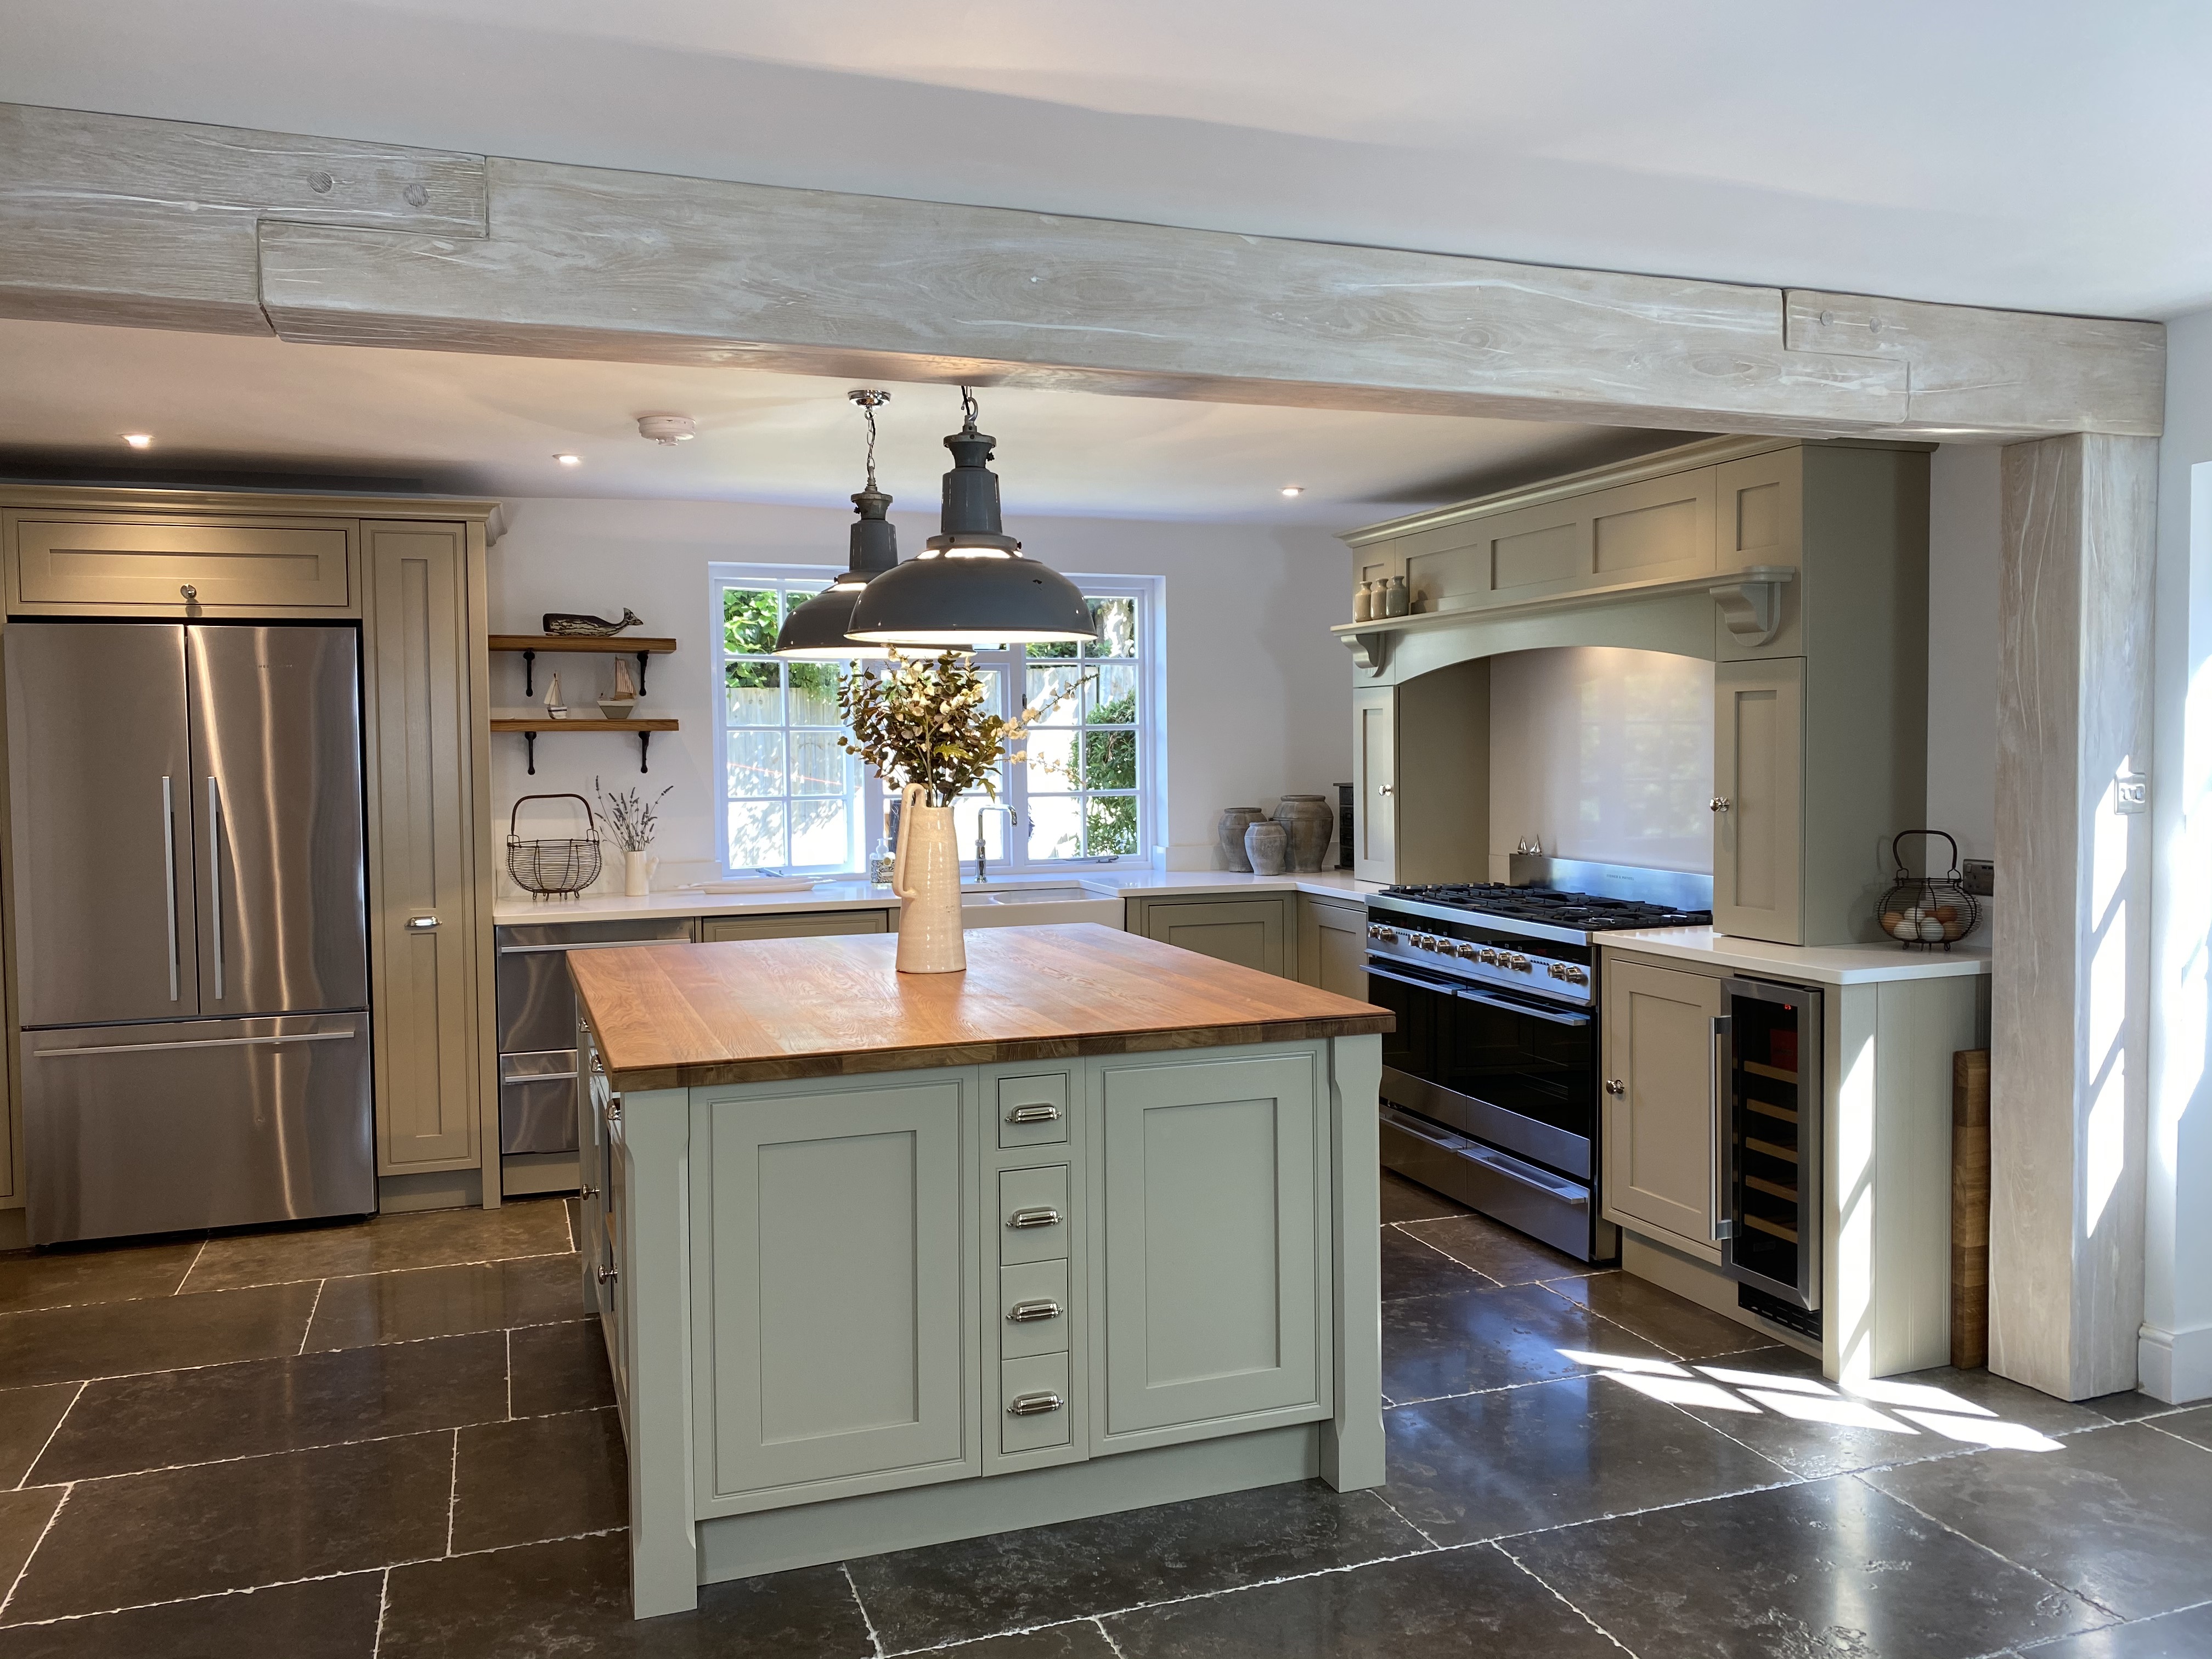 Oak kitchen worktop installed by FMB member Bagshots Ltd.